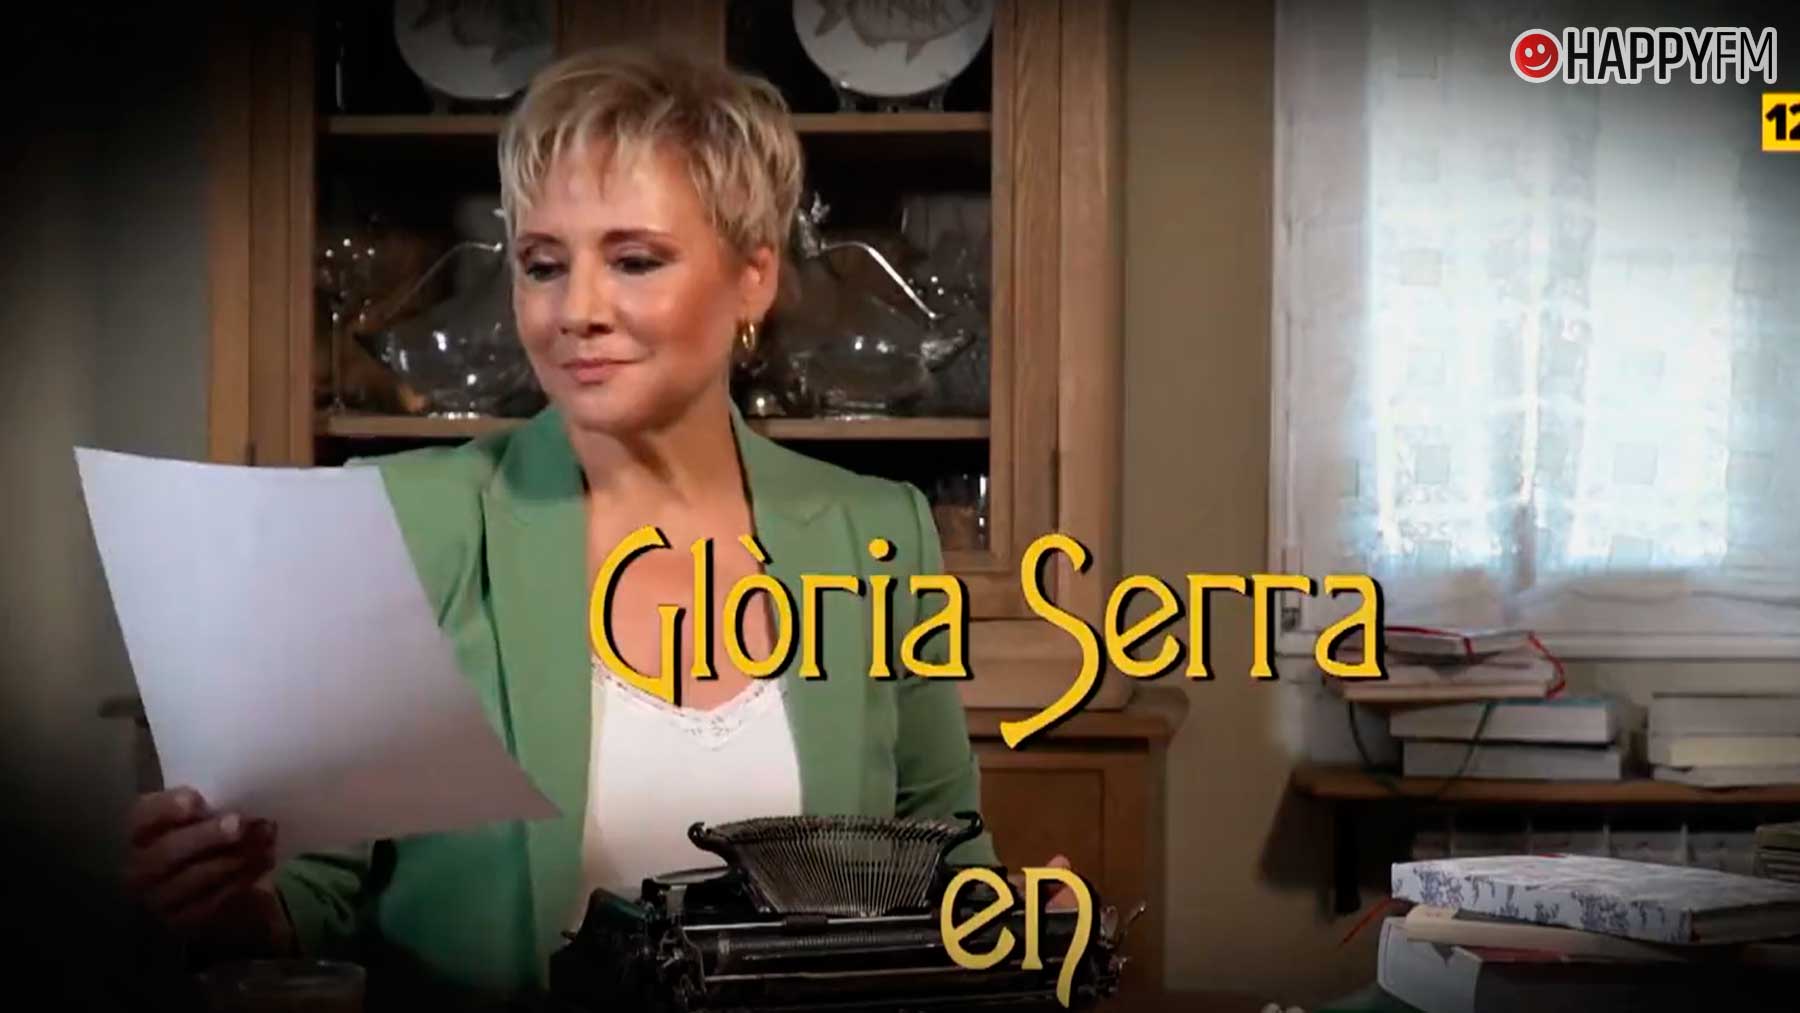 Equipo de investigación convierte a Glòria Serra en Angela Lansbury para su nueva temporada